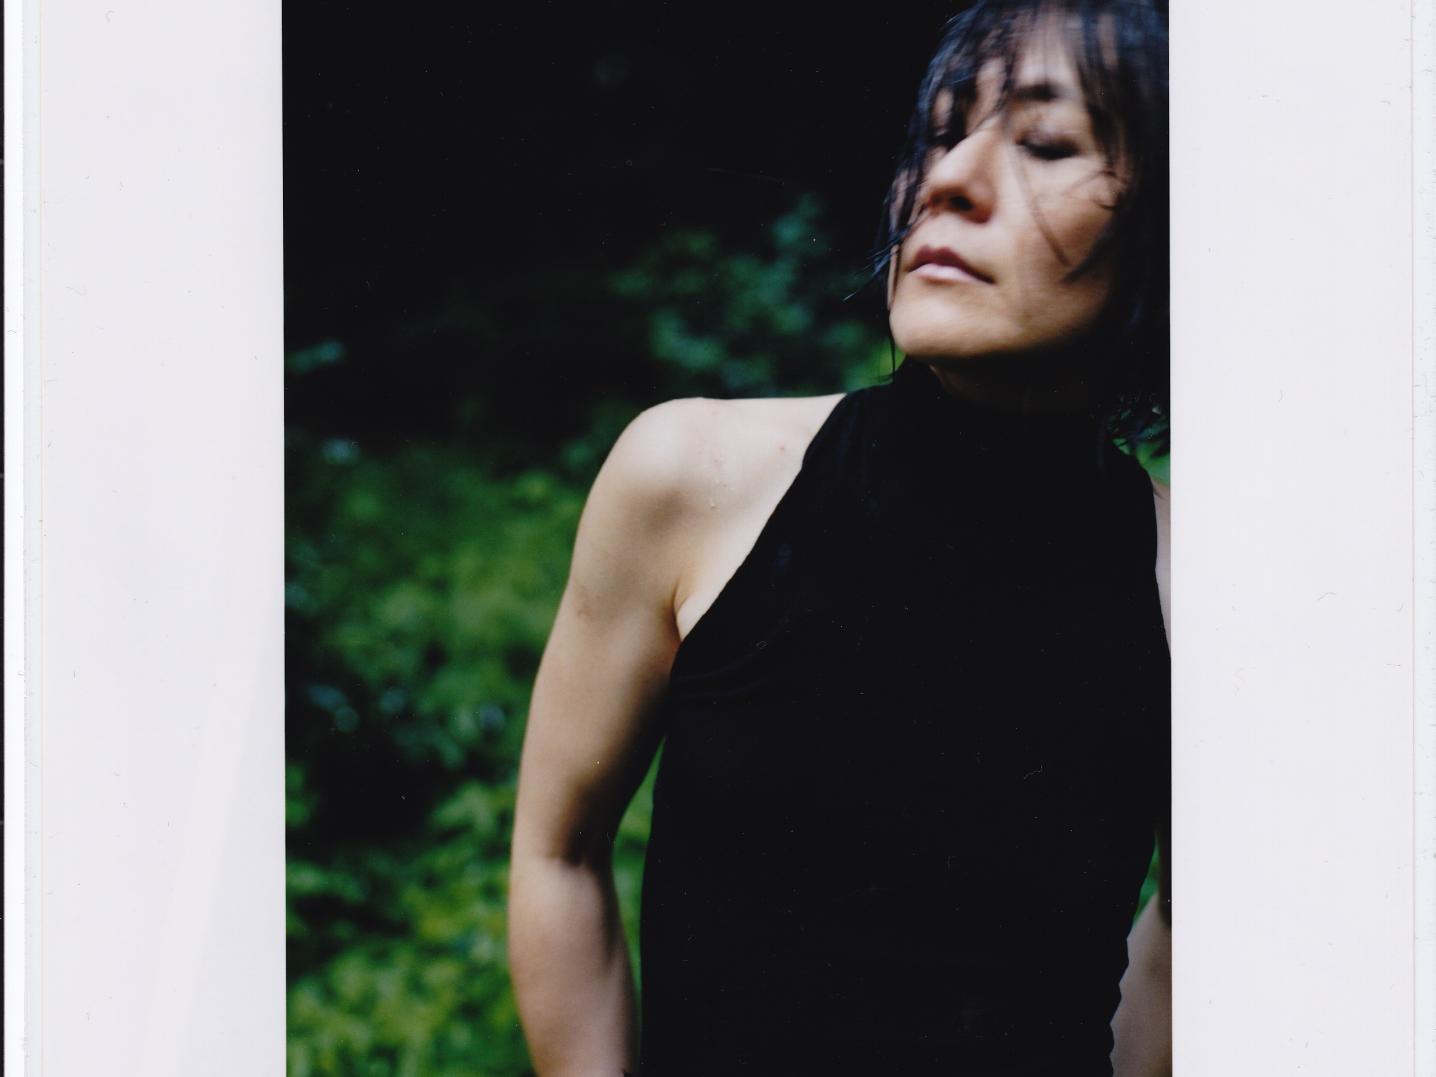 Tomoko Mukaiyama